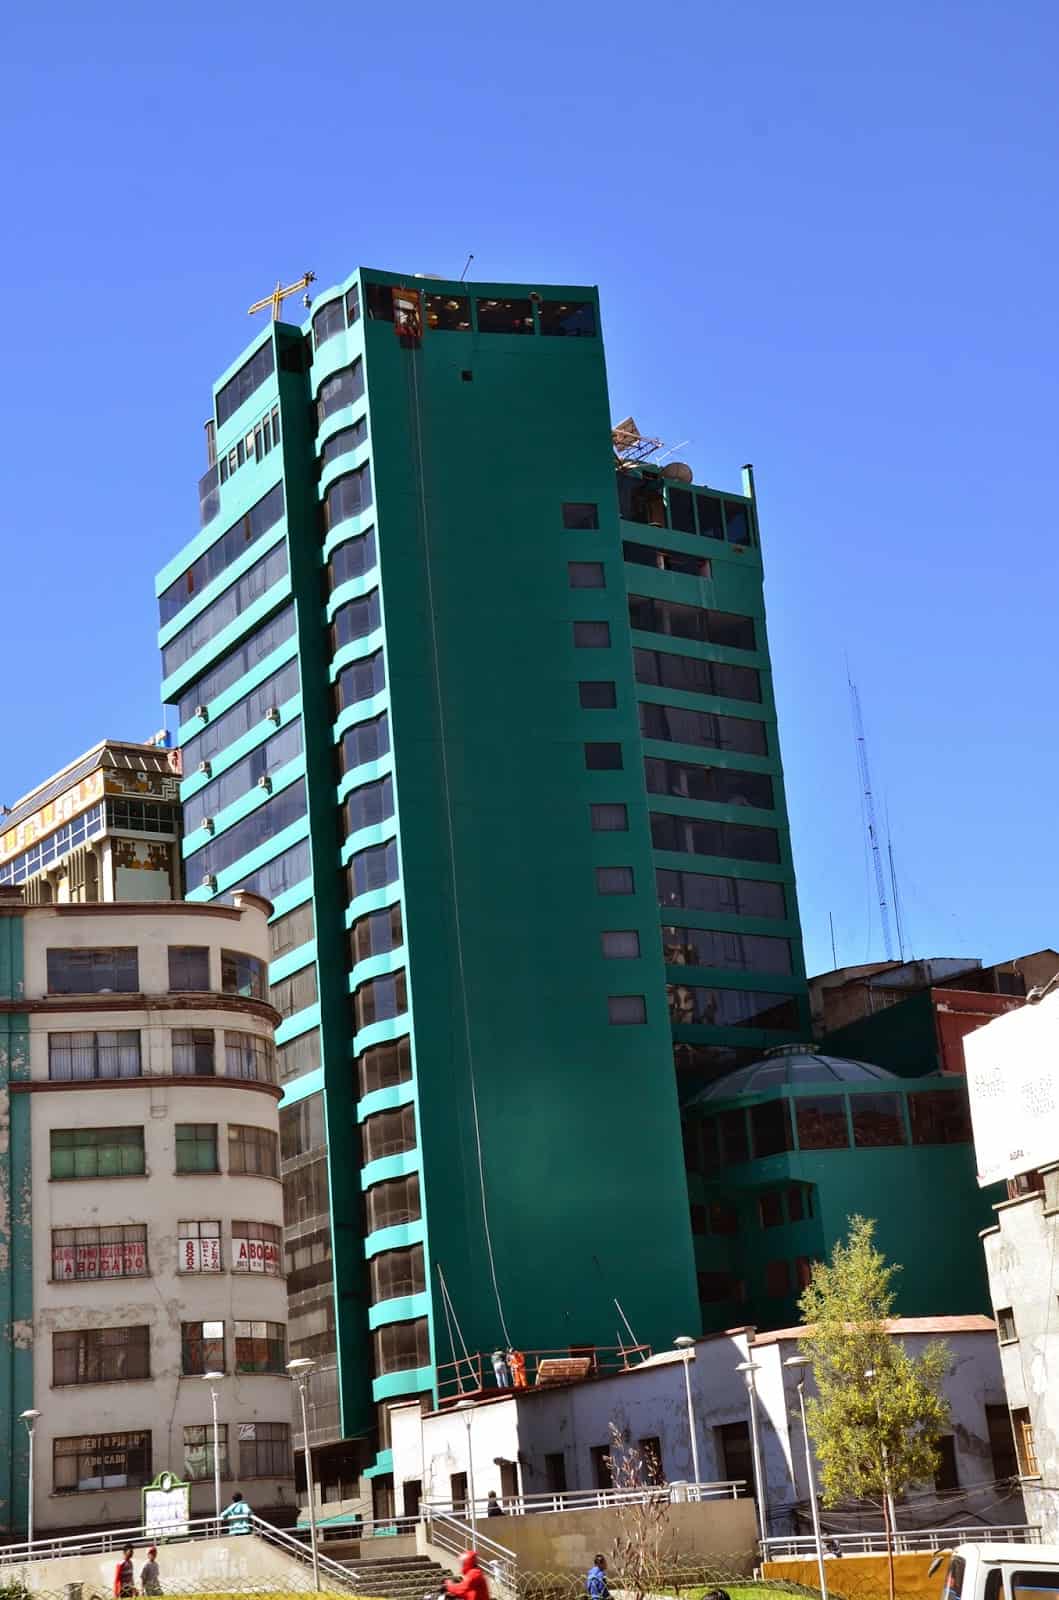 Hotel Presidente in La Paz, Bolivia